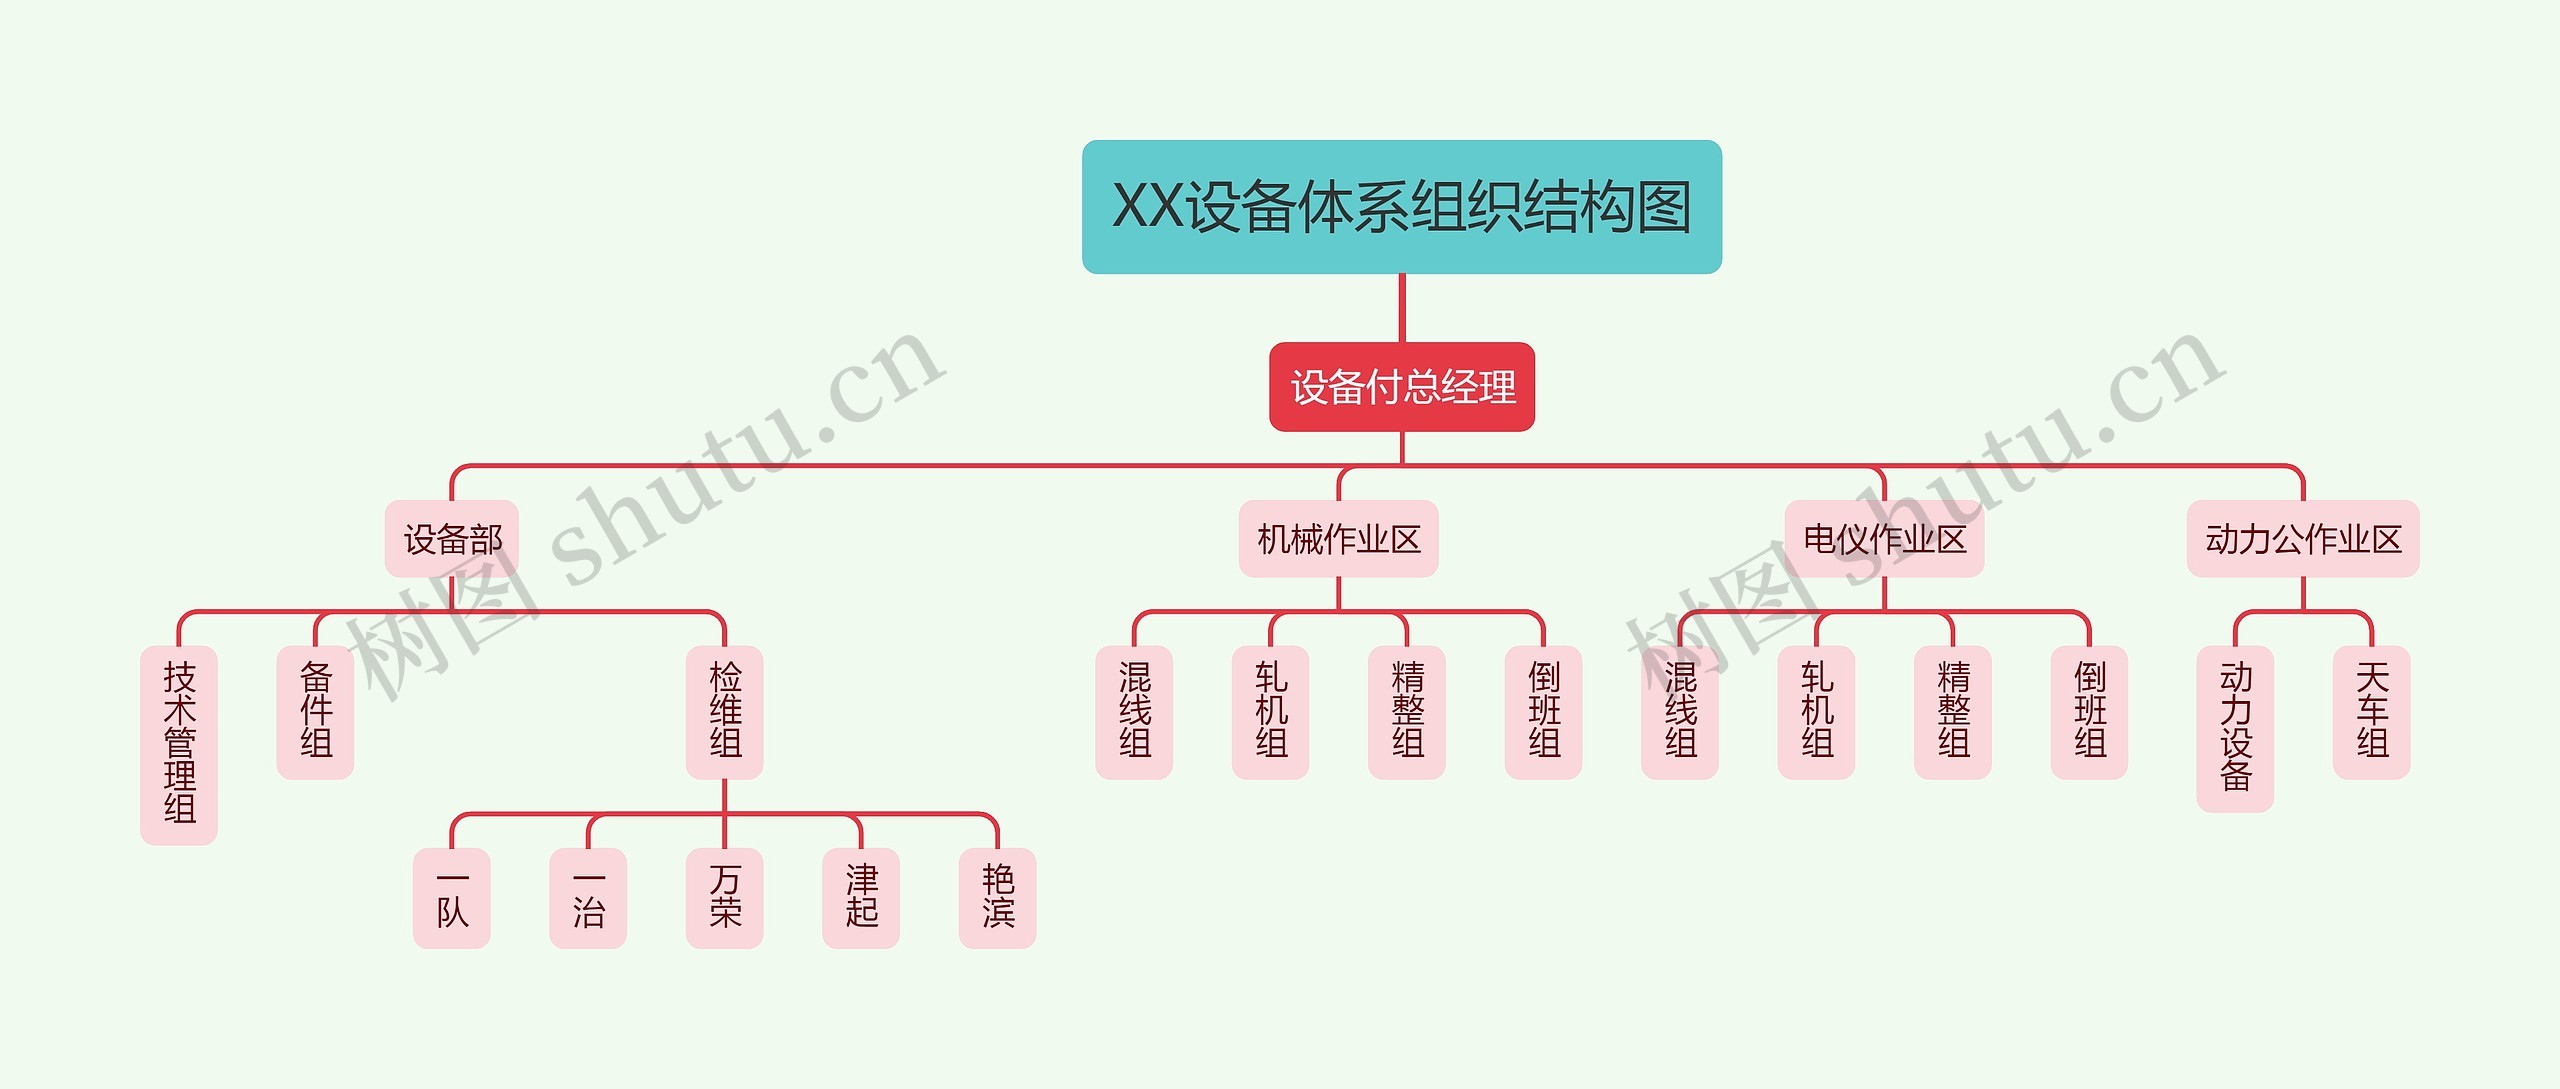 XX设备体系组织结构图